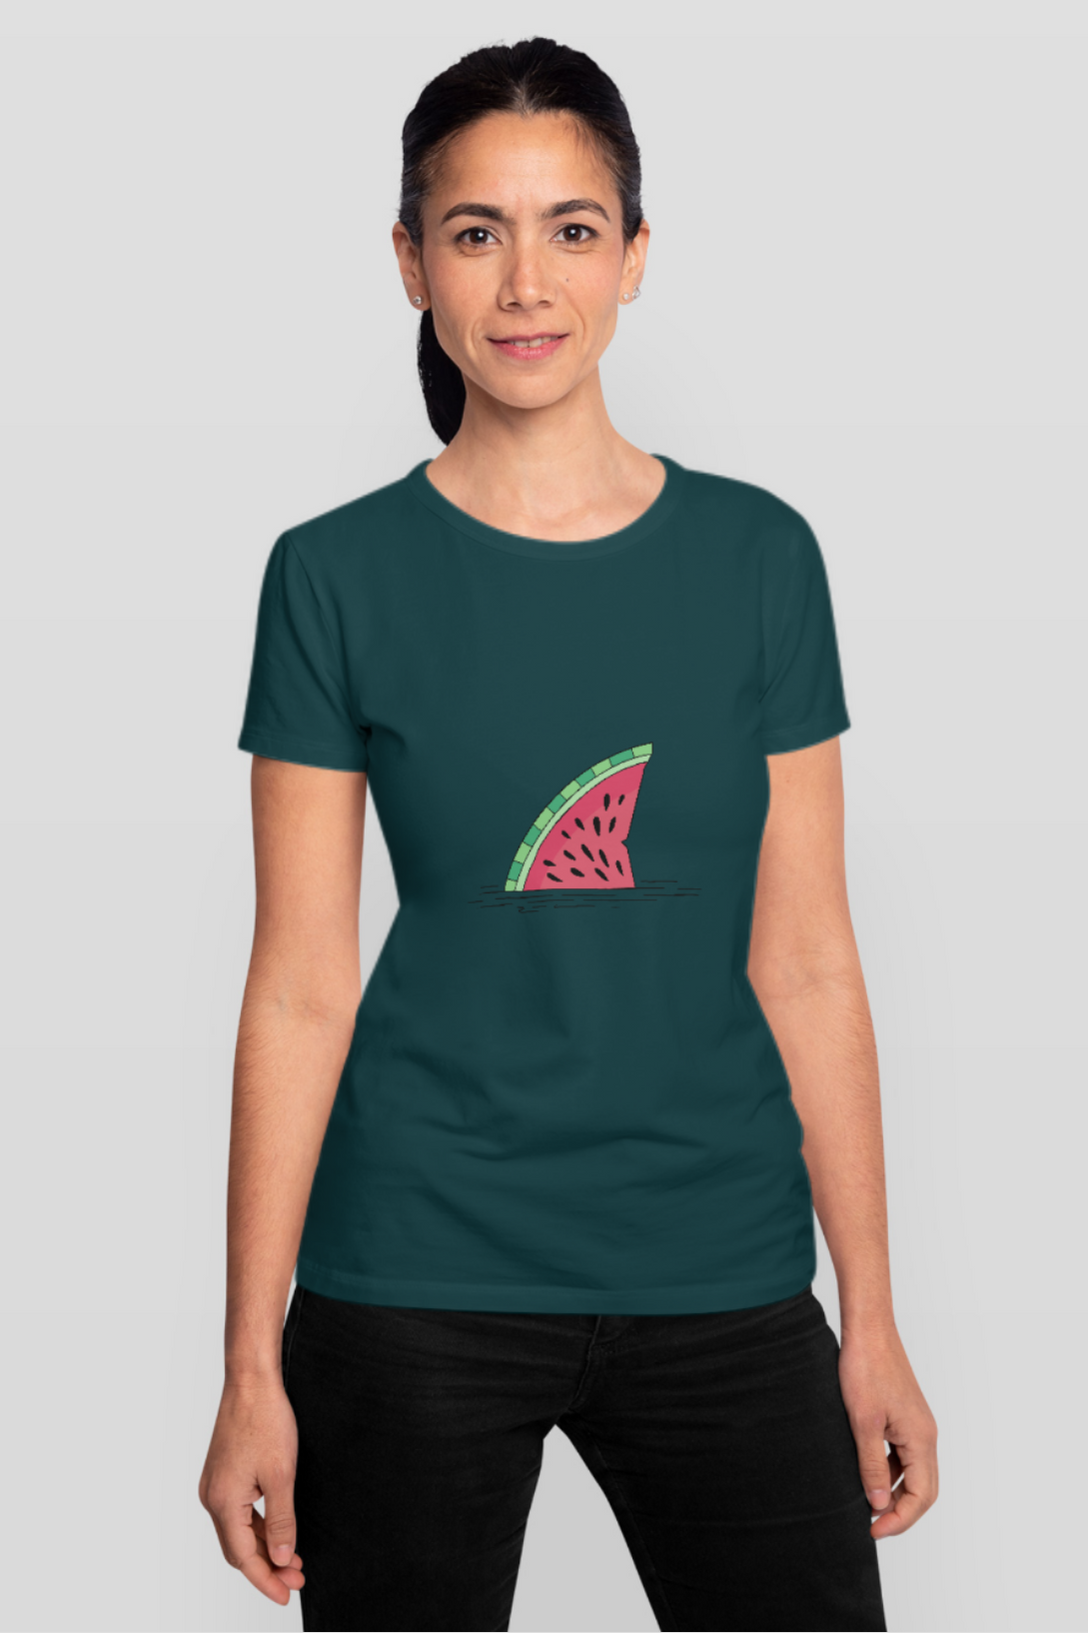 Watermelon Shark Fin Printed T-Shirt For Women - WowWaves - 9